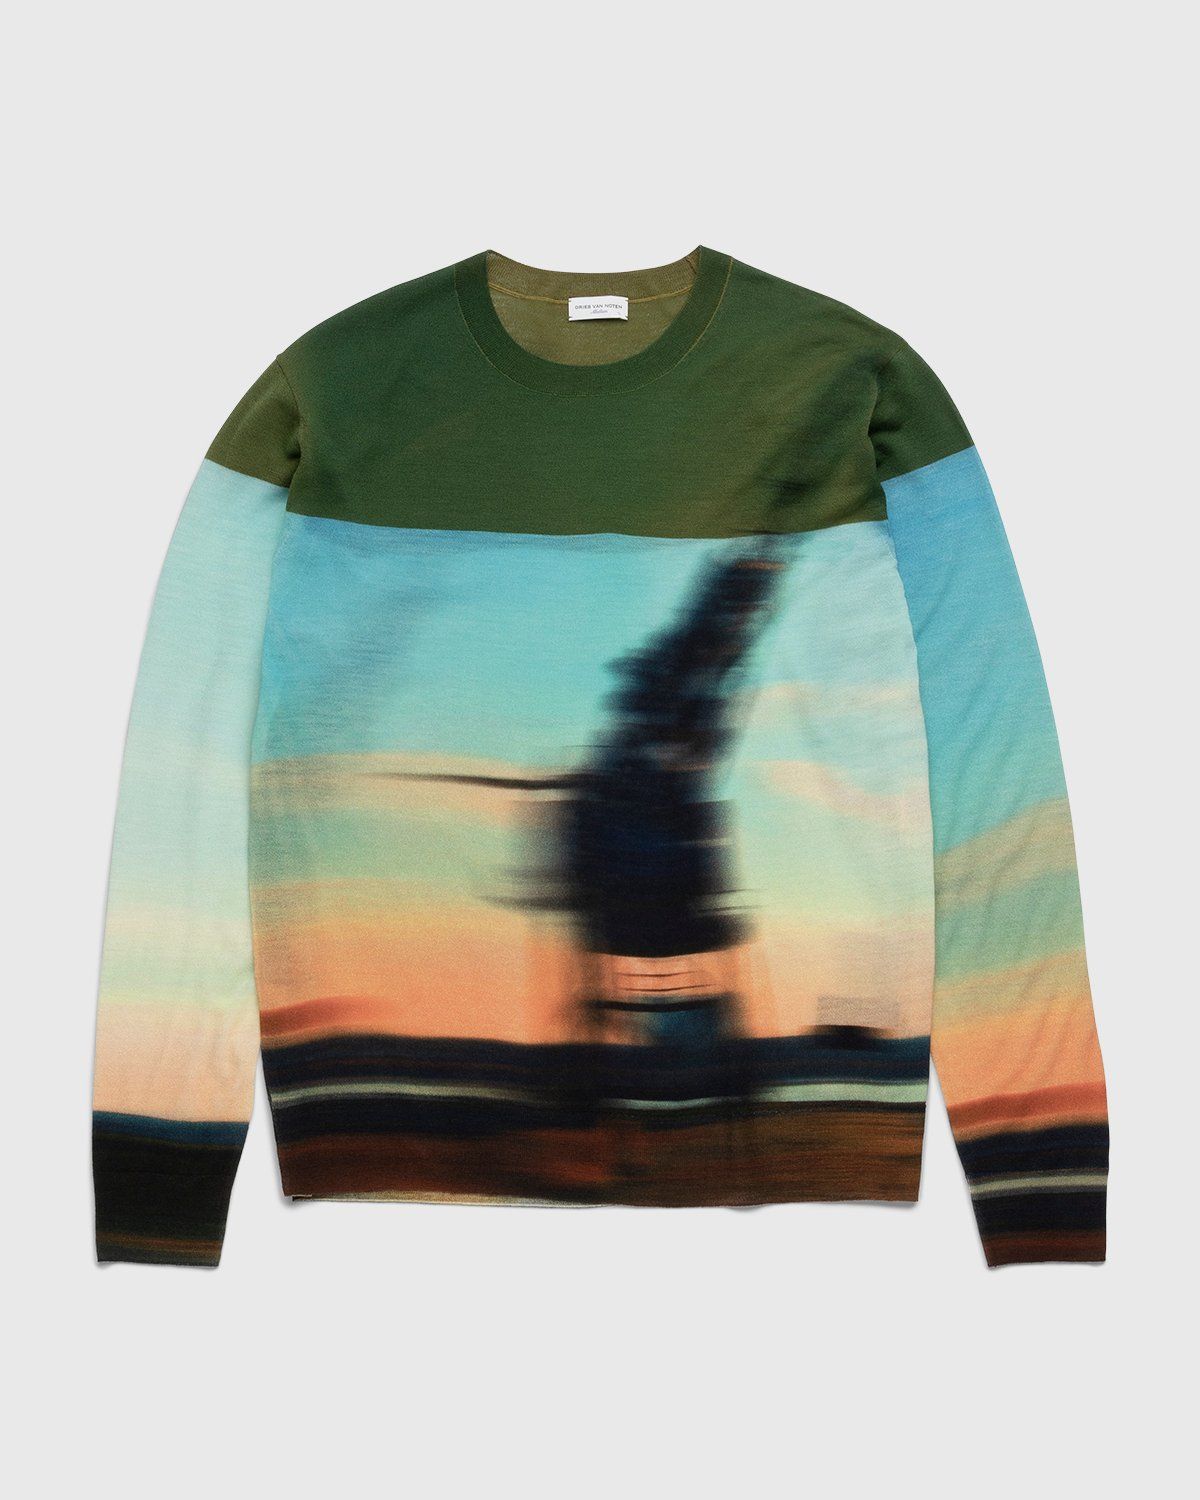 Dries van Noten – Jendrik Merino Sweater Dessin - Knitwear - Multi - Image 1